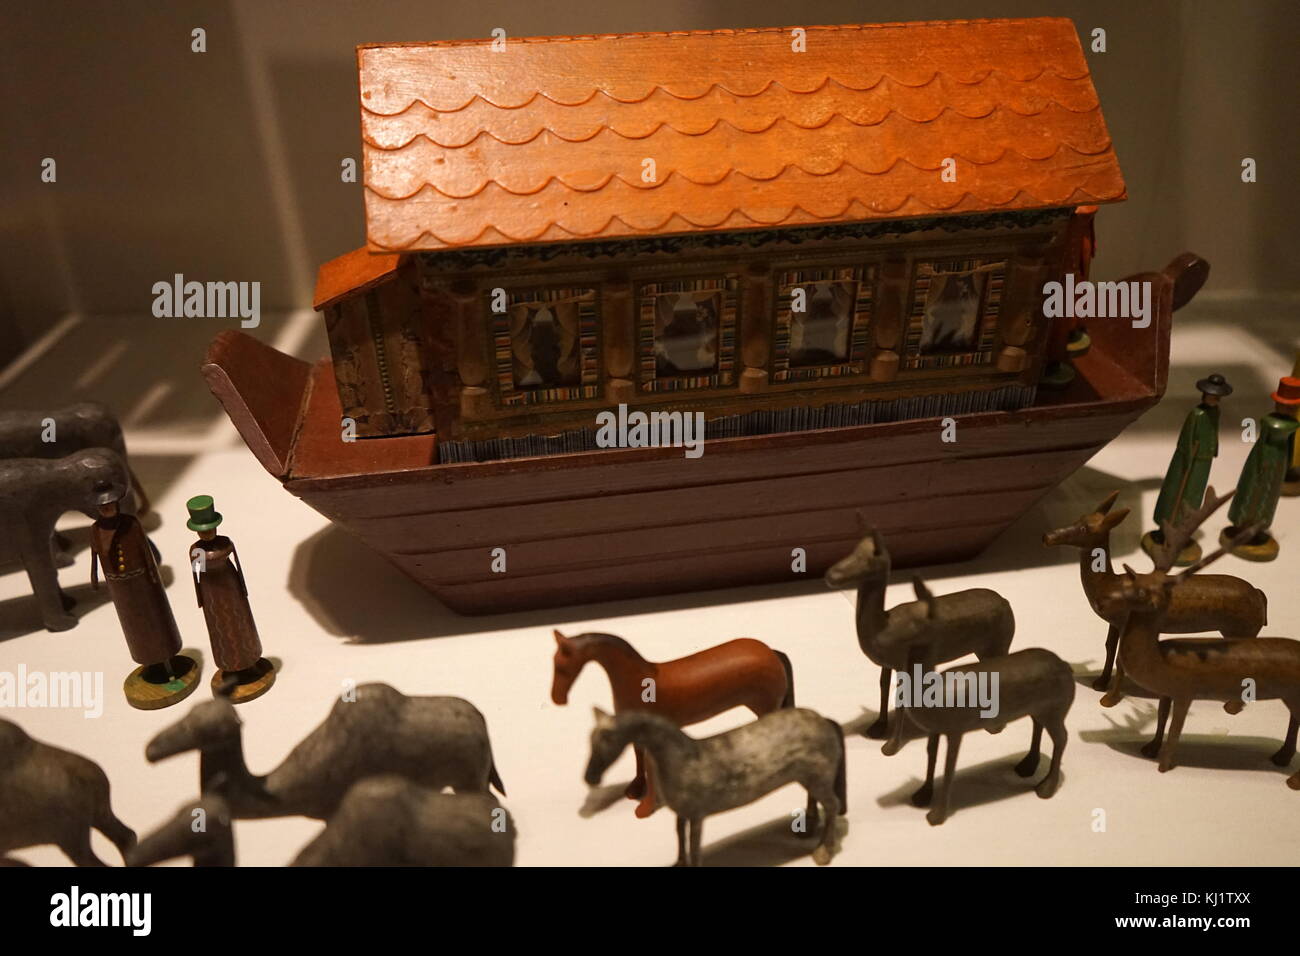 Holzfiguren verwendet die Geschichte von Noahs Arche. Die Tiere hier in Paaren bereit, Vorstand der Arche zu sehen sind neu zu erstellen. Vom 19. Jahrhundert Stockfoto